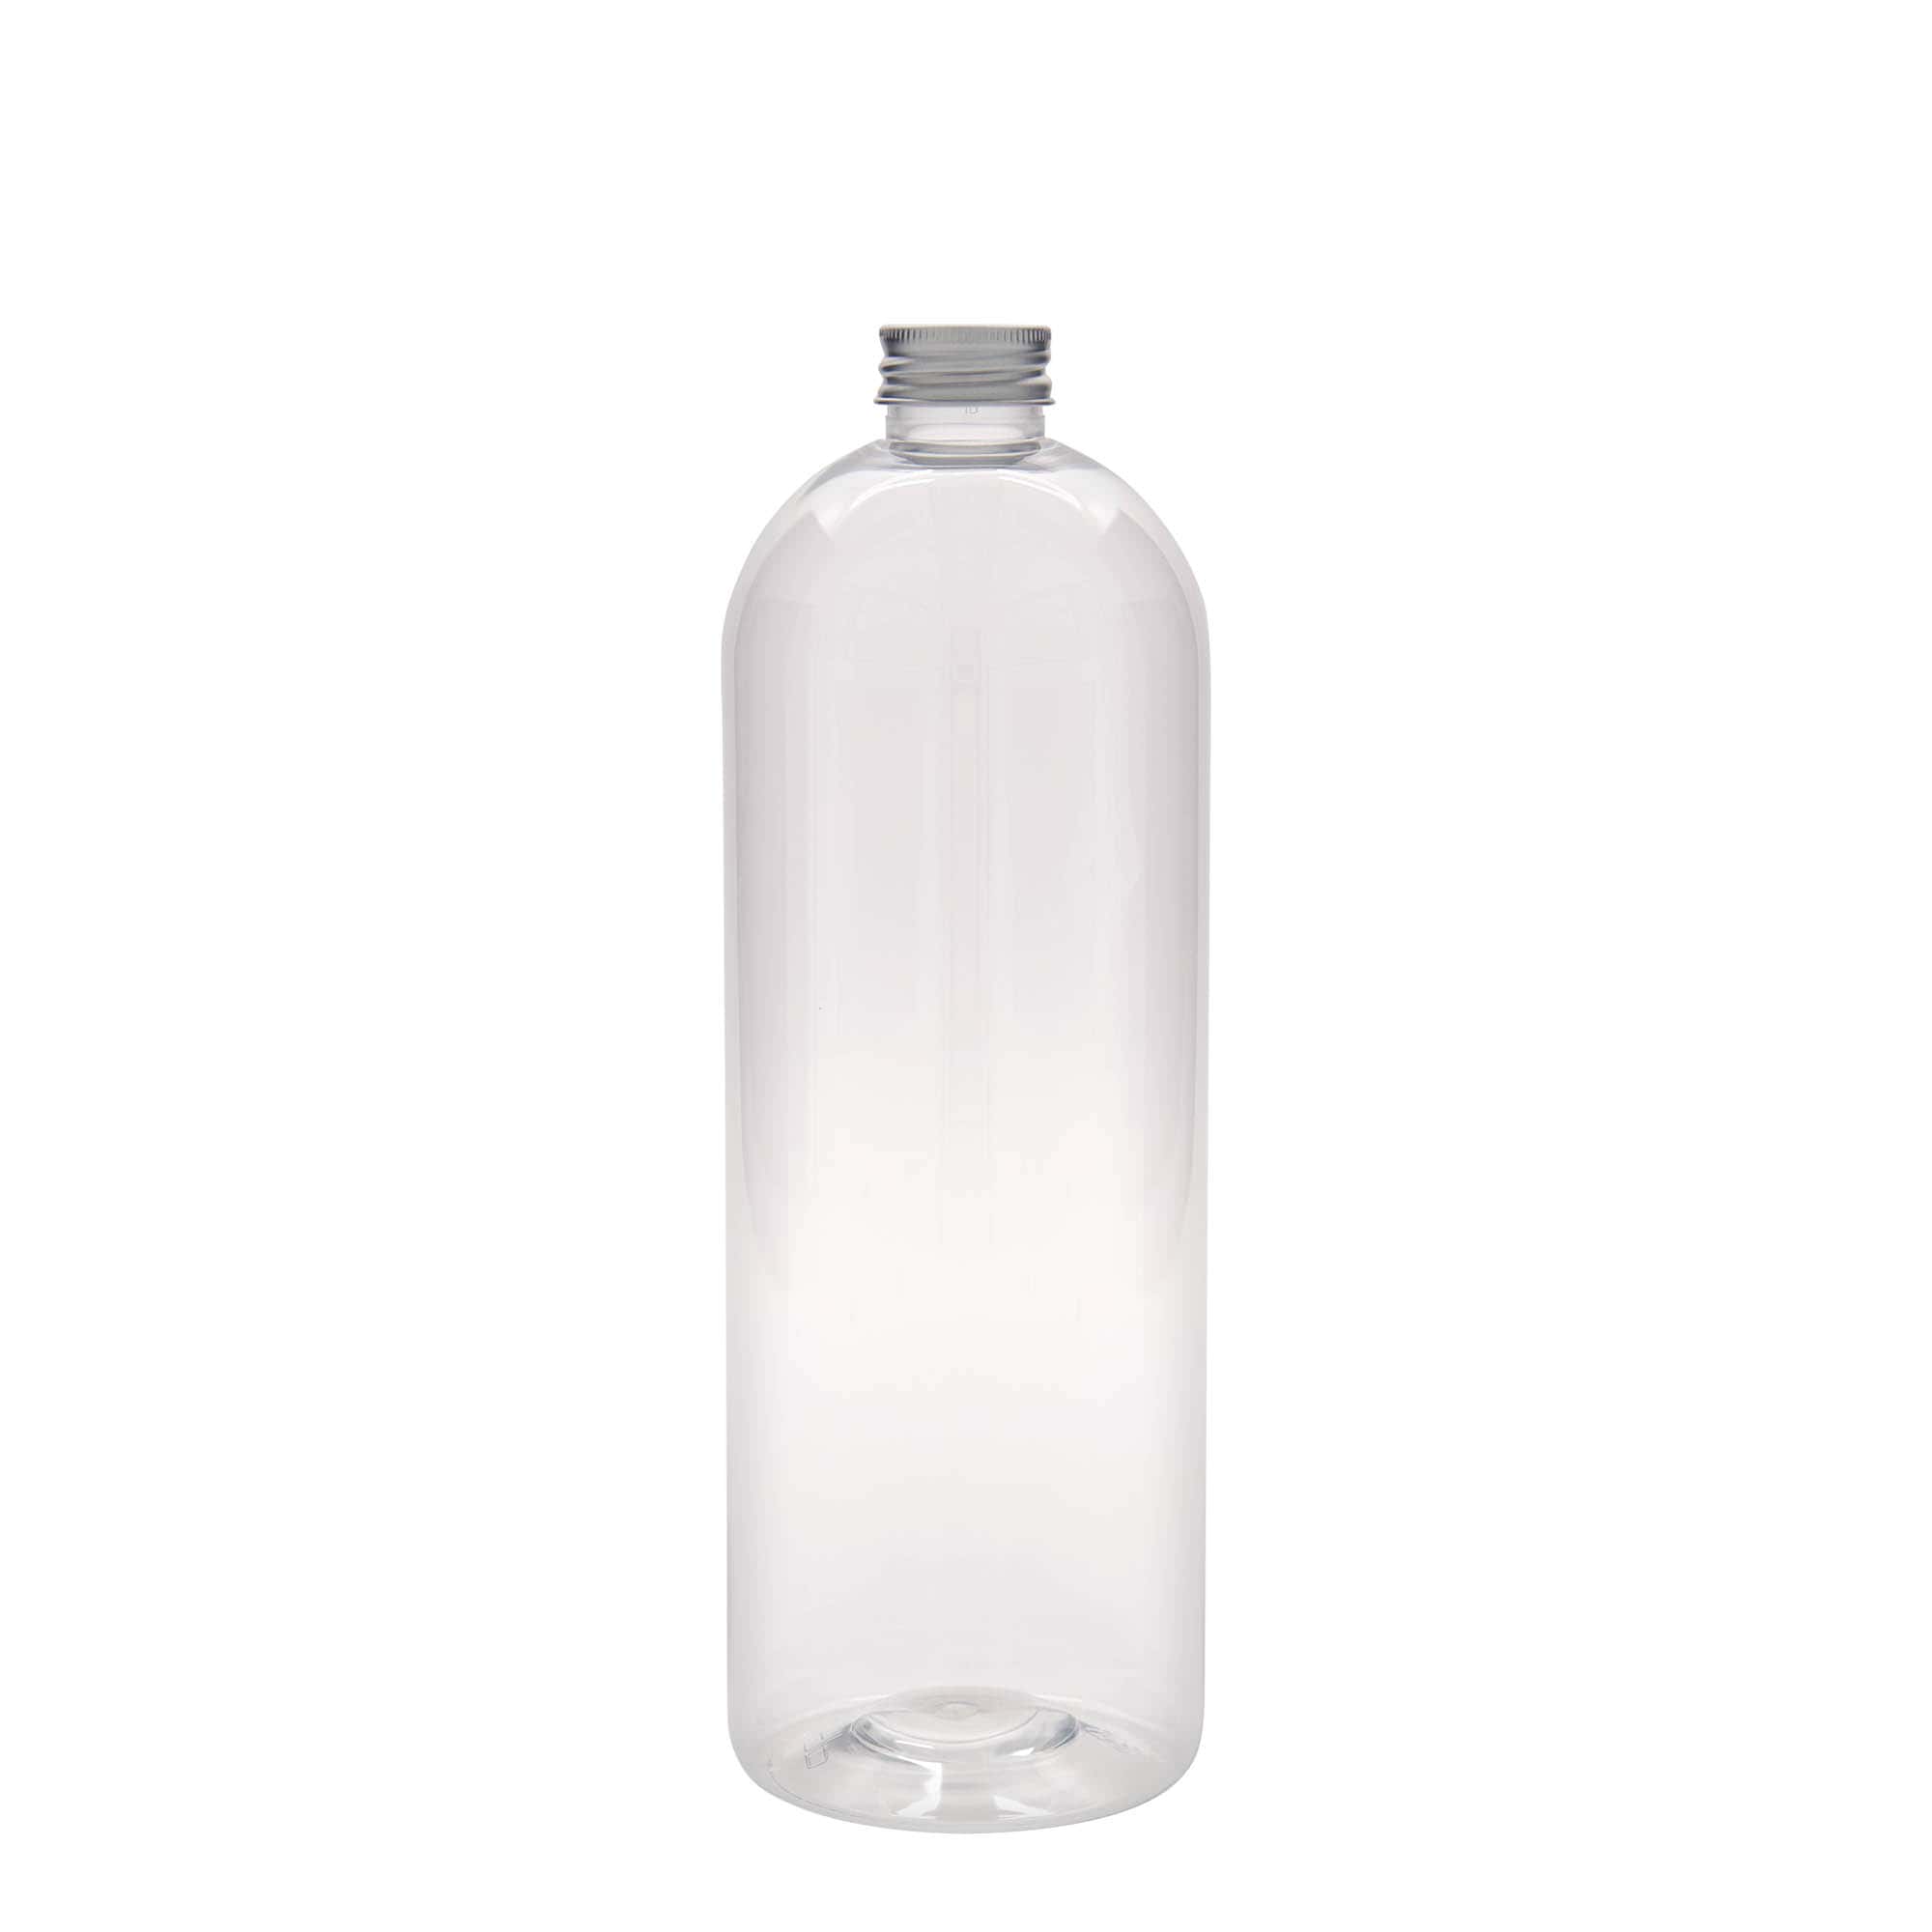 1,000 ml PET bottle 'Pegasus', plastic, closure: GPI 20/410